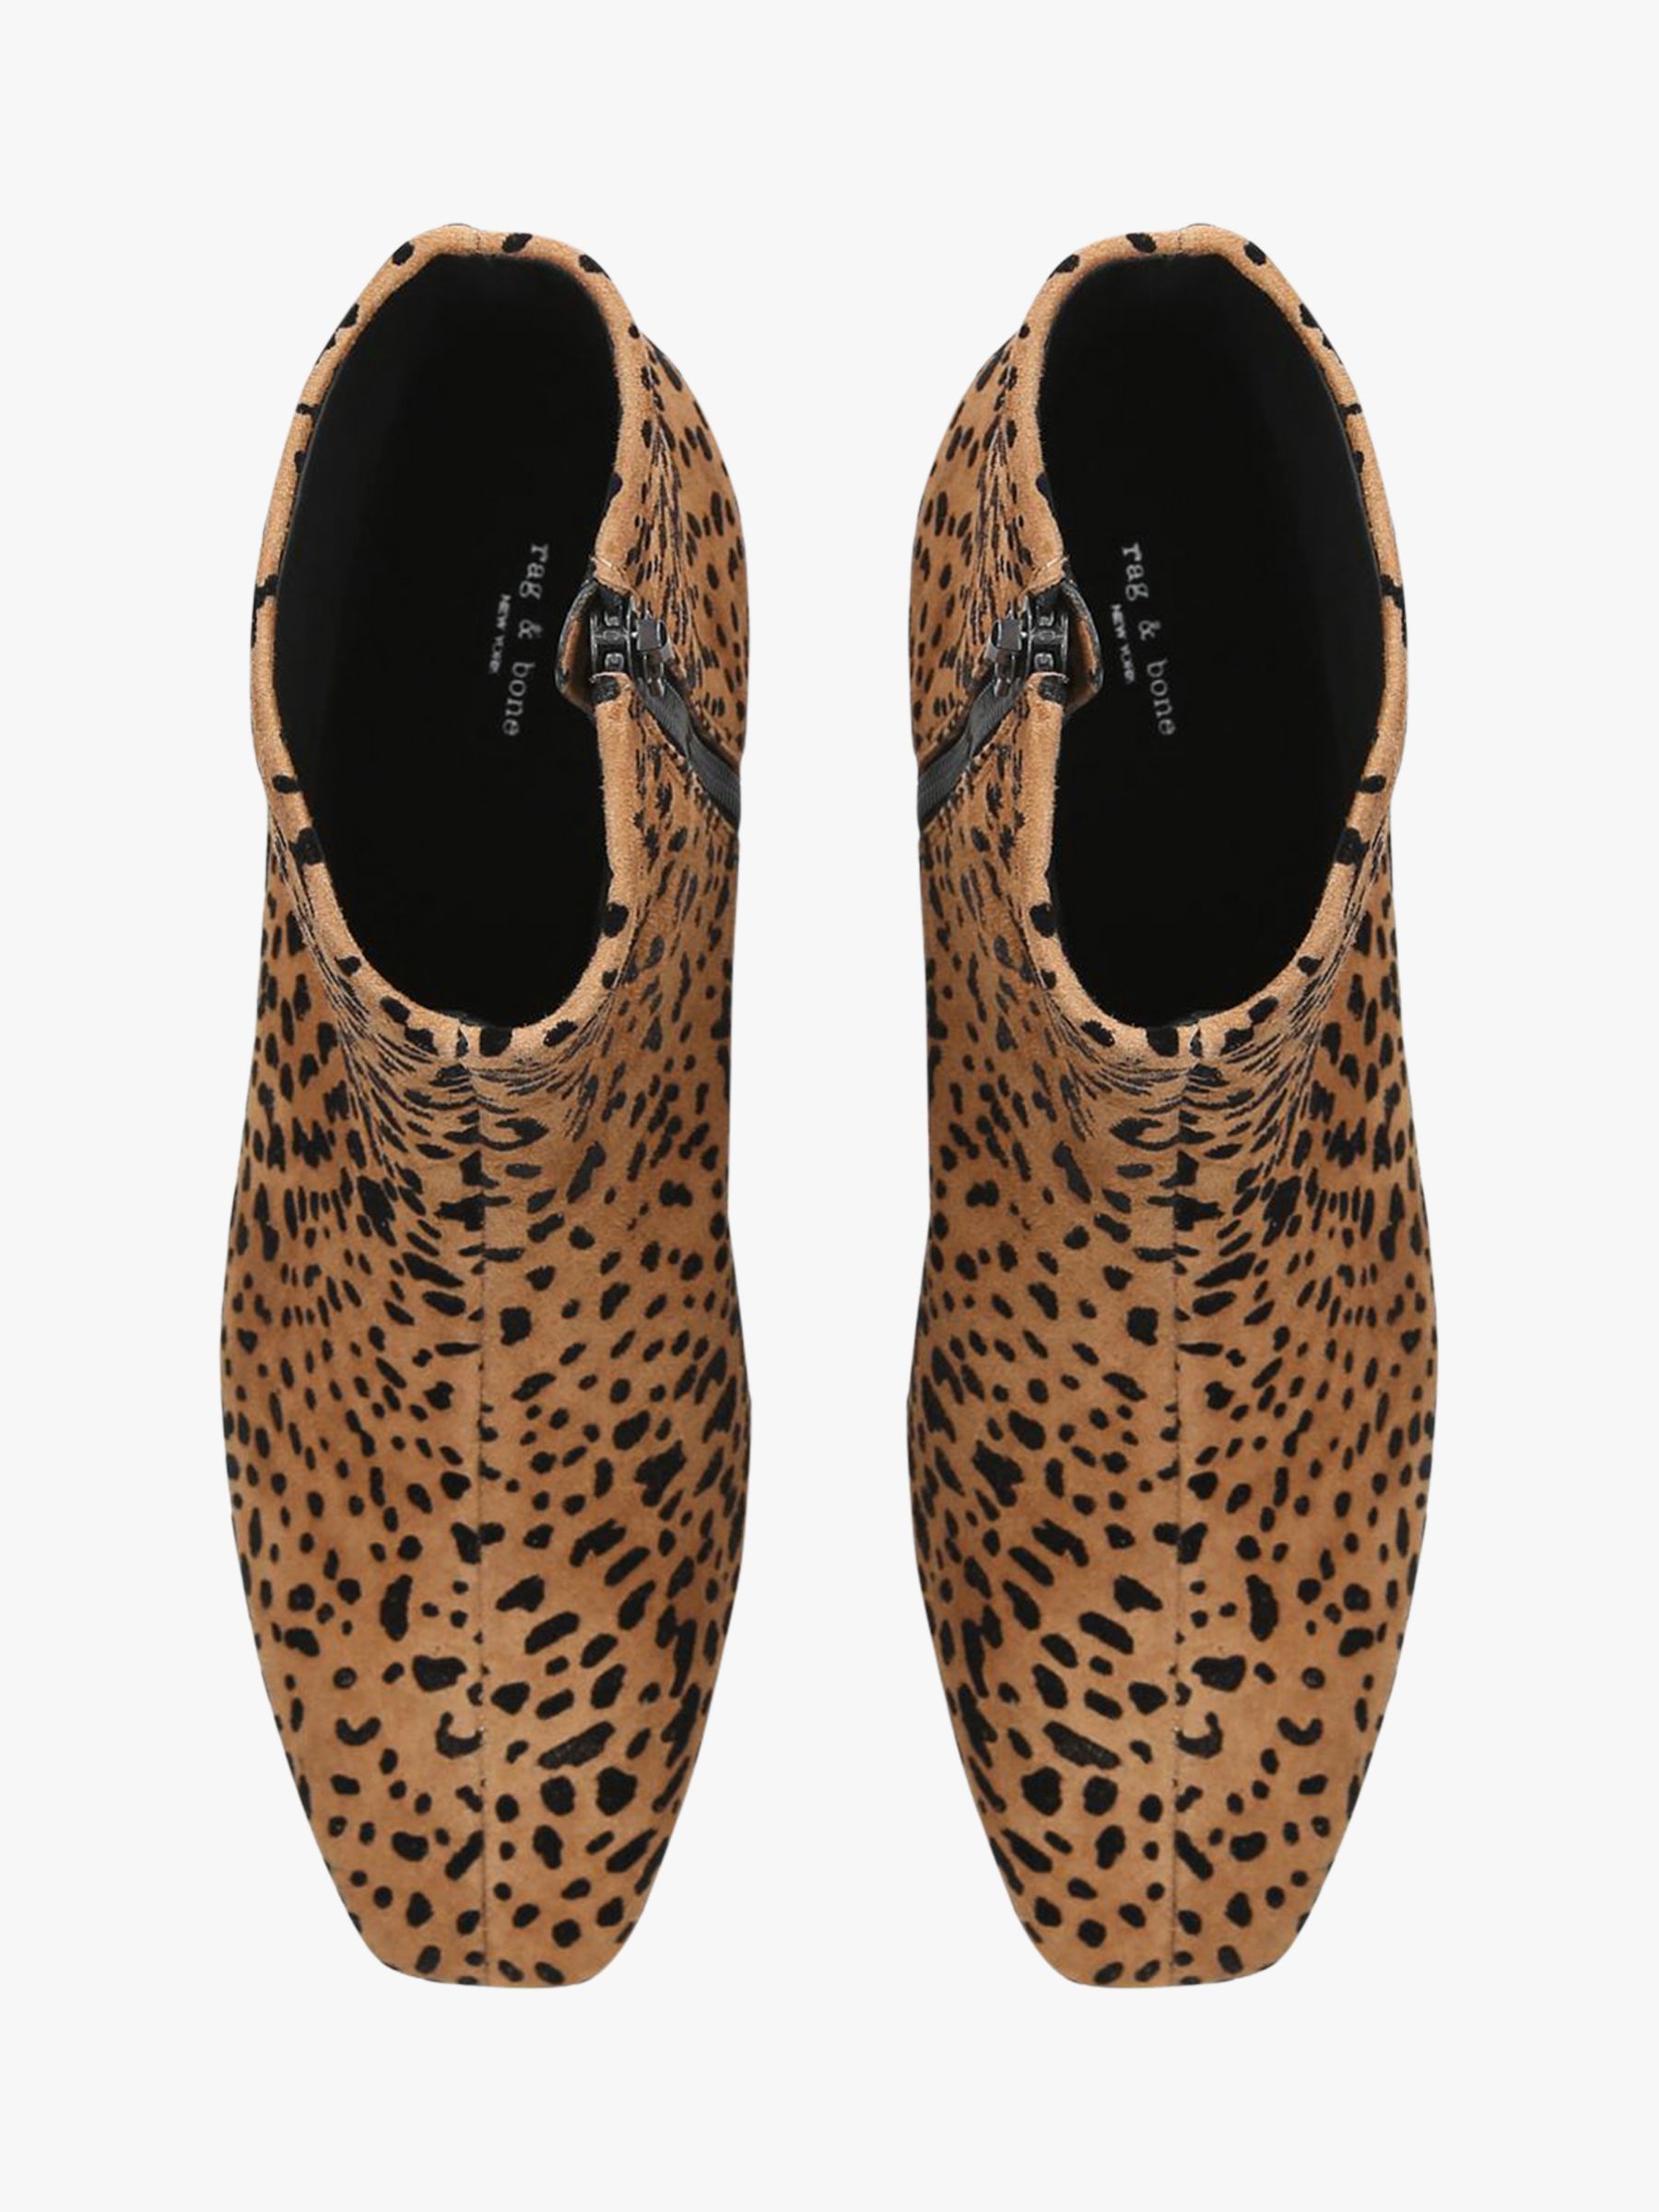 rag and bone leopard booties